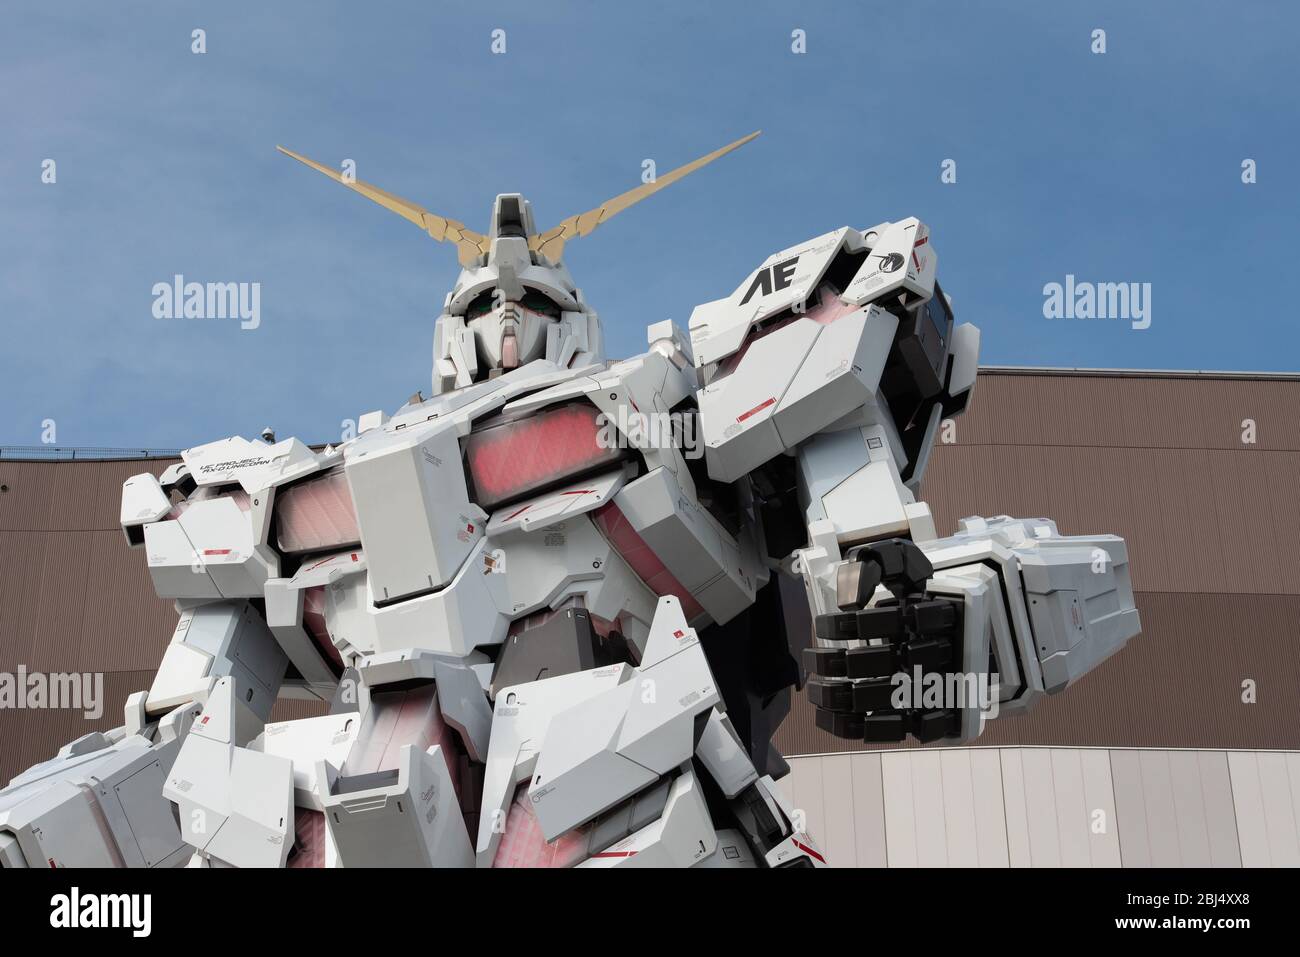 Die Einhorn Gundam Statue, EINE riesige weiße Statue von Kult Sci-Fi Roman & Anime Charakter, mit nächtlicher Musik & Lichter. Vielfalt, Tokyo Plaza, Tokio, Stockfoto